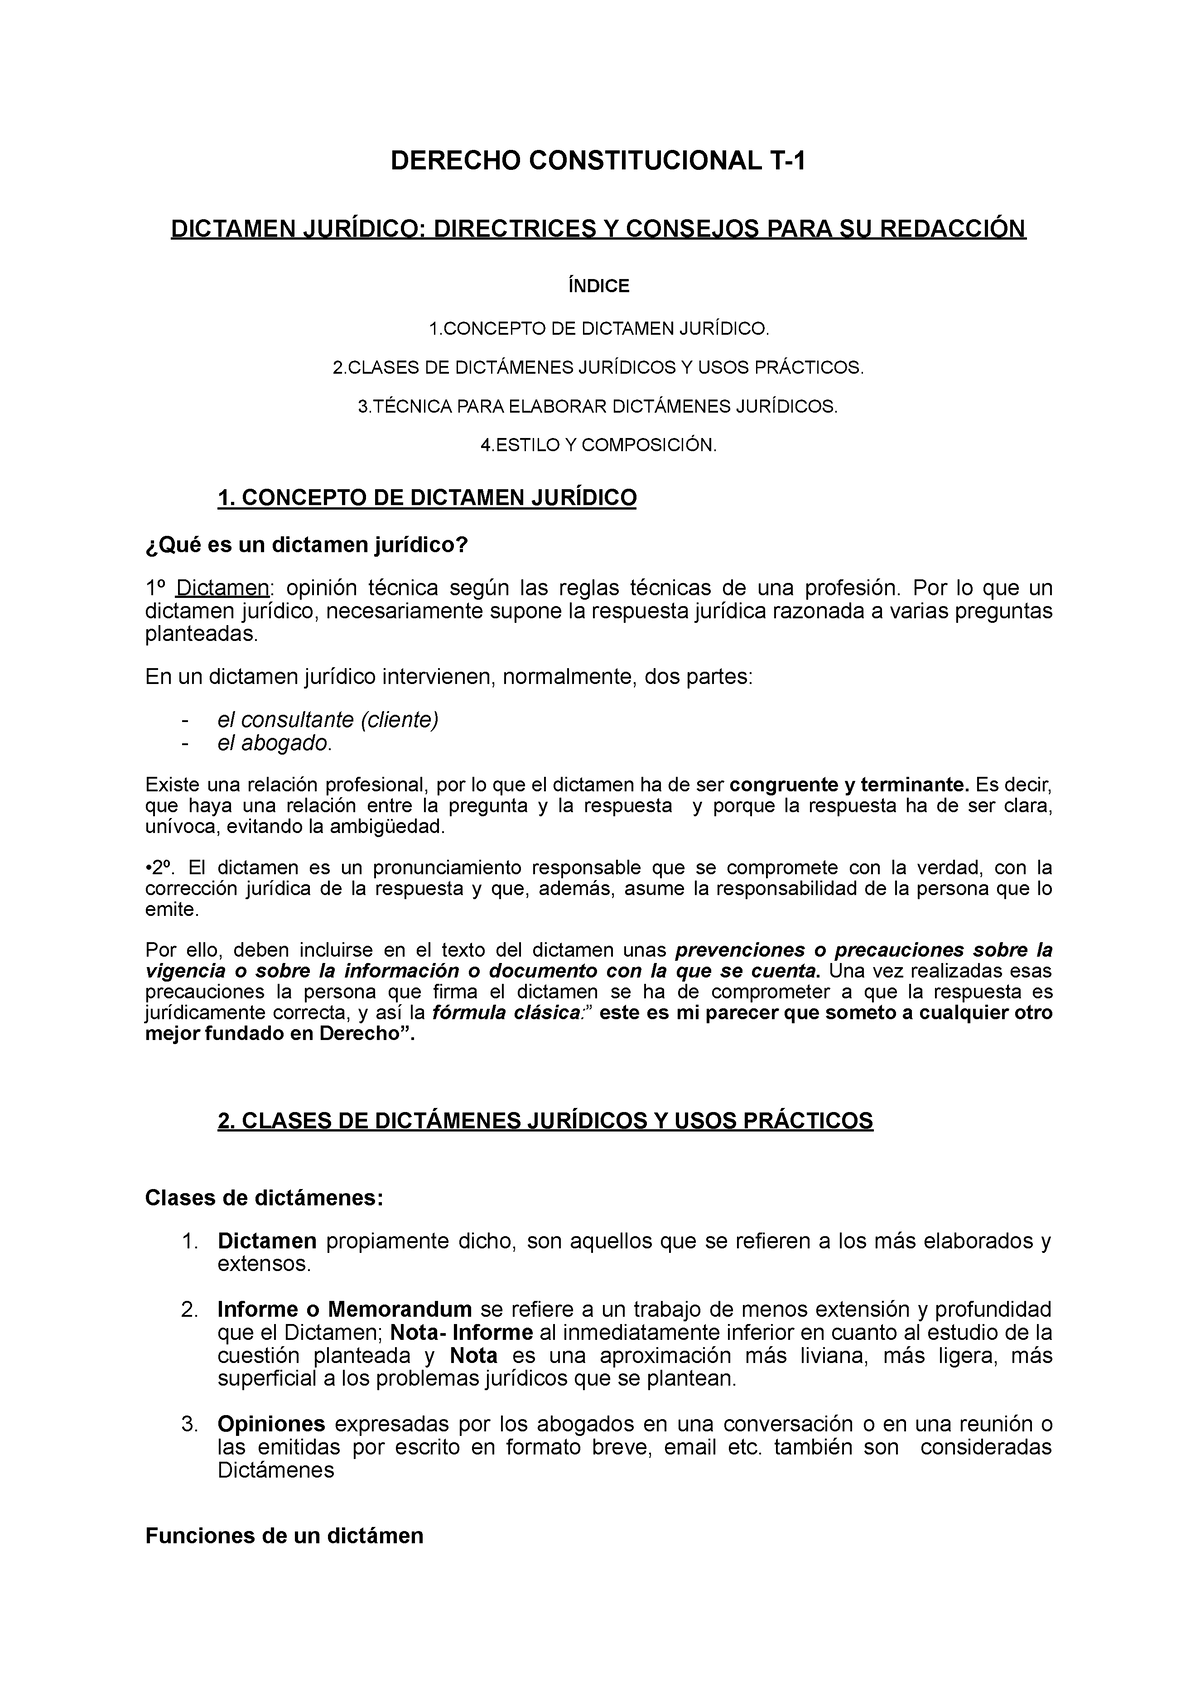 Constitucional Dictamen jurídico: características y estructura - DERECHO  CONSTITUCIONAL T- DICTAMEN - Studocu